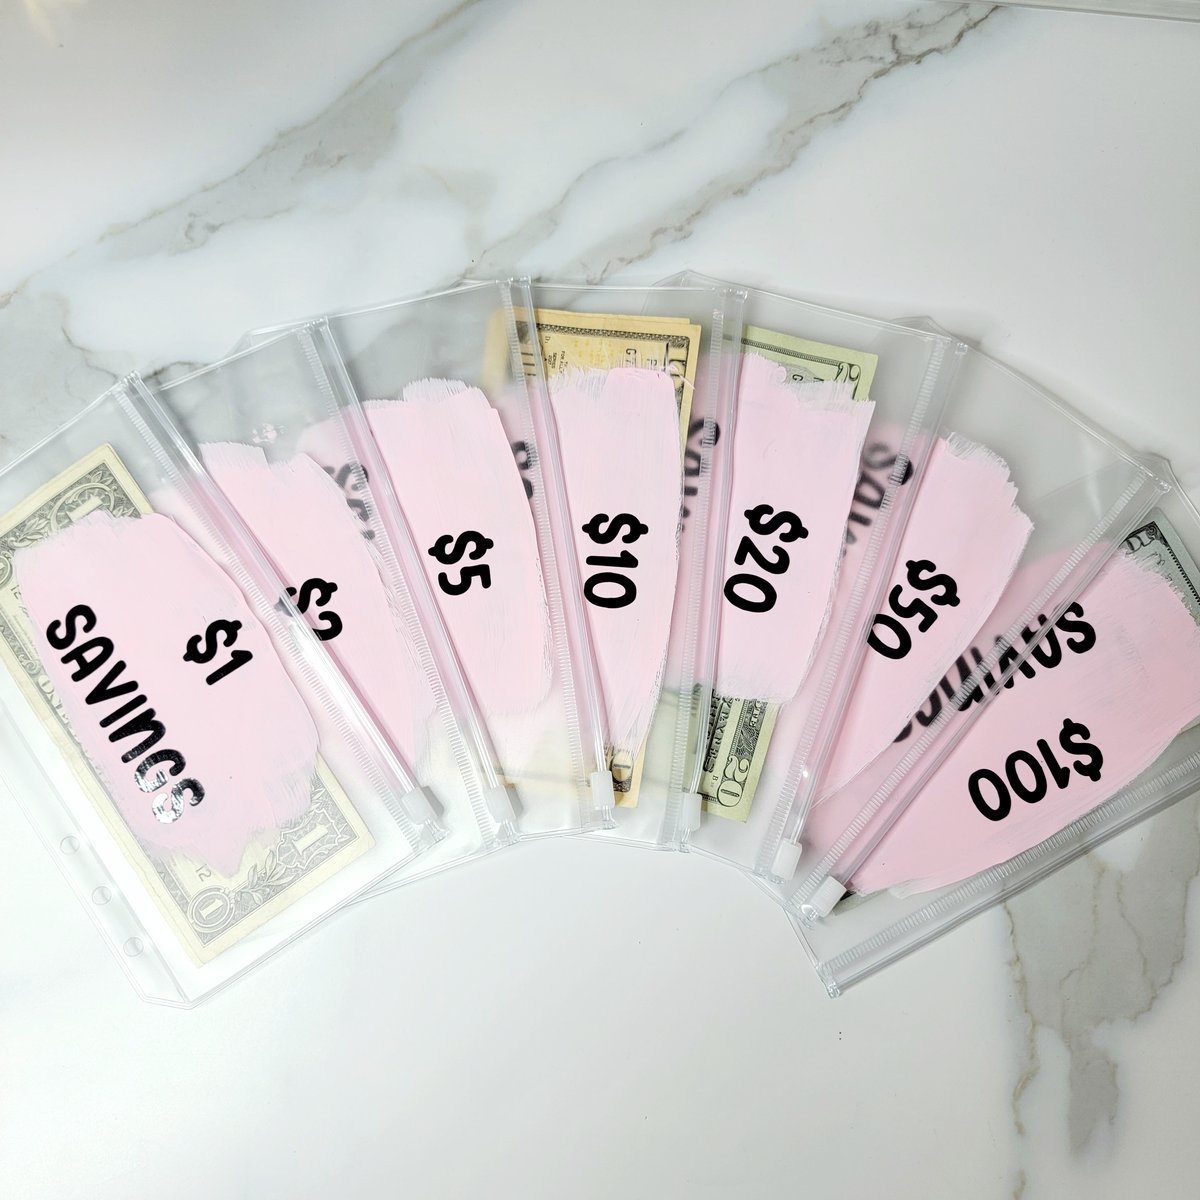 Luxe A6 Budget Binder Cash Stuffing Money Saving Envelopes 